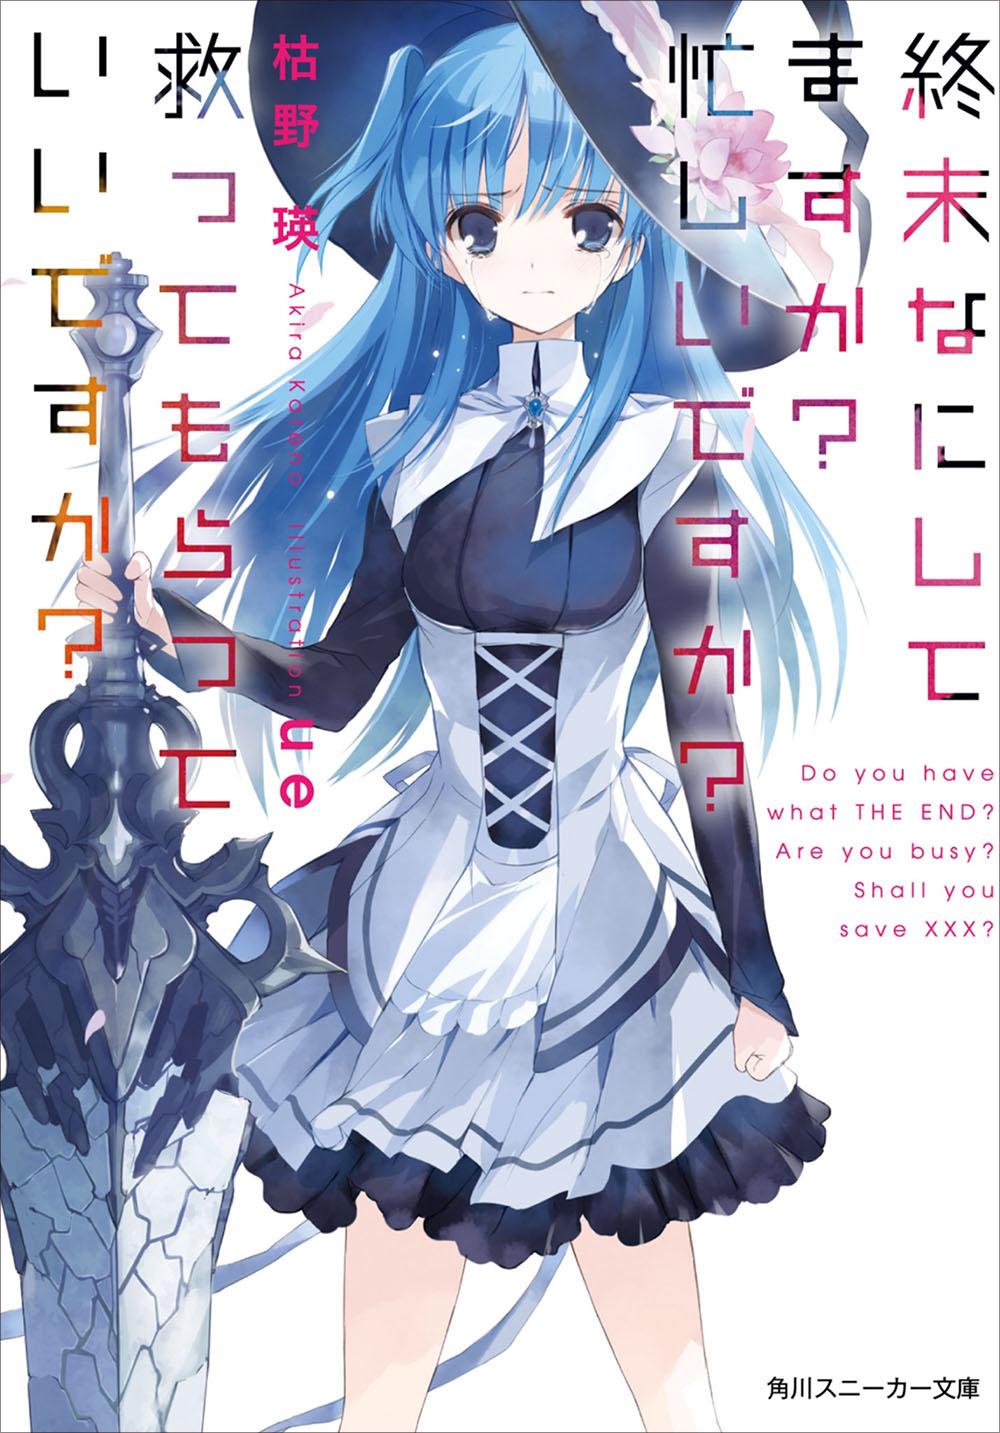 WorldEnd (Suka Suka Light Novel). Shuumatsu nani shitemasu ka